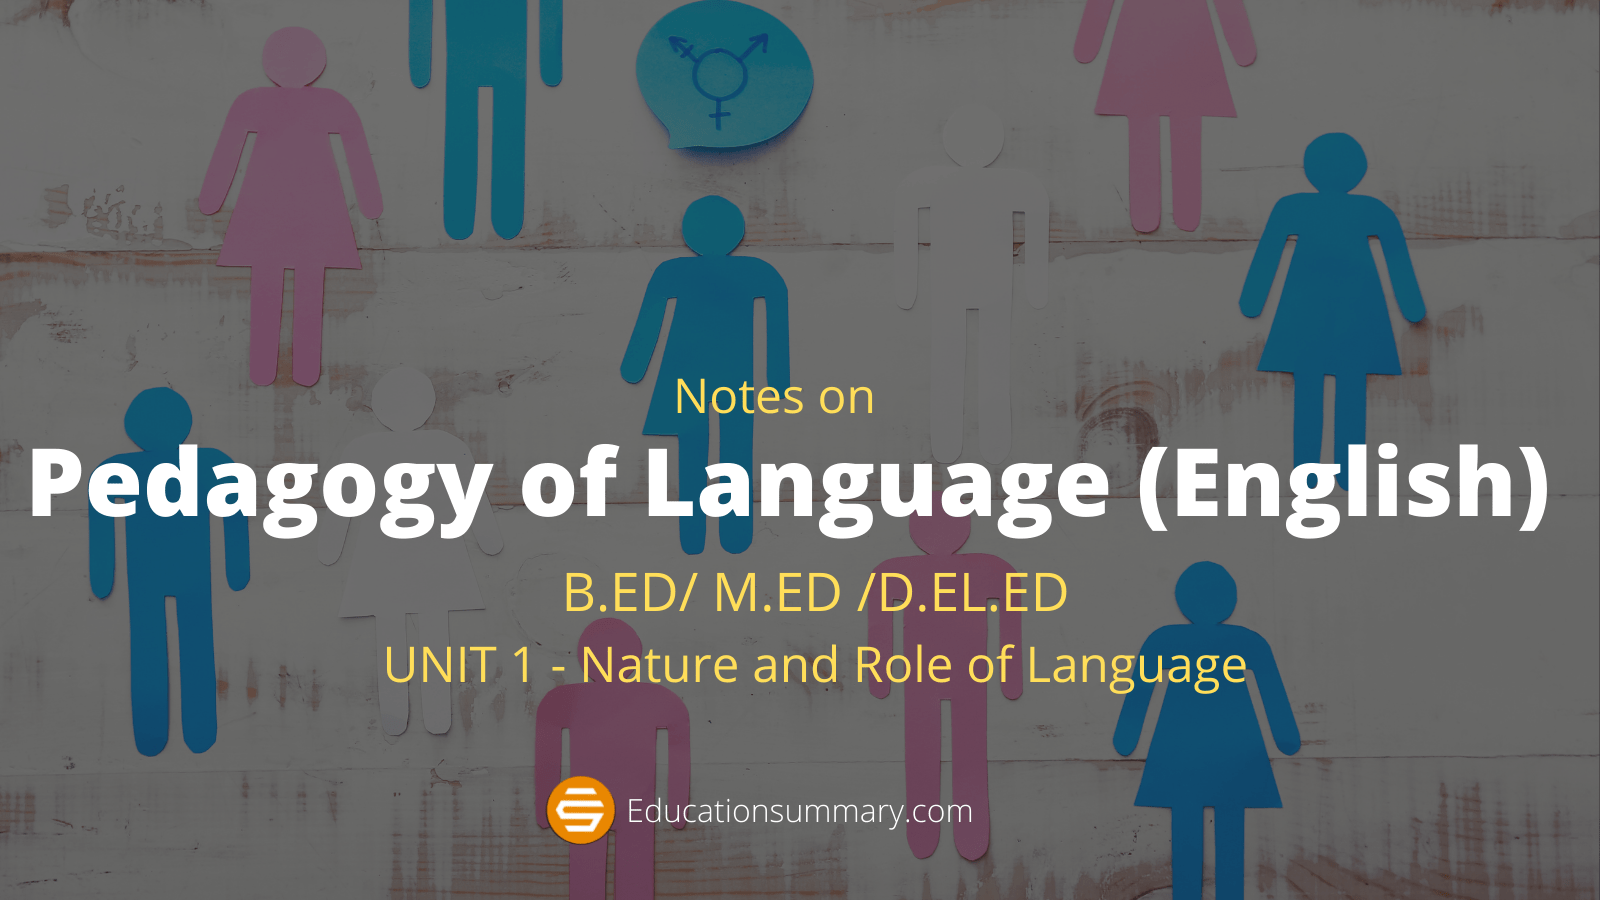 Pedagogy of Language (English) Unit 1